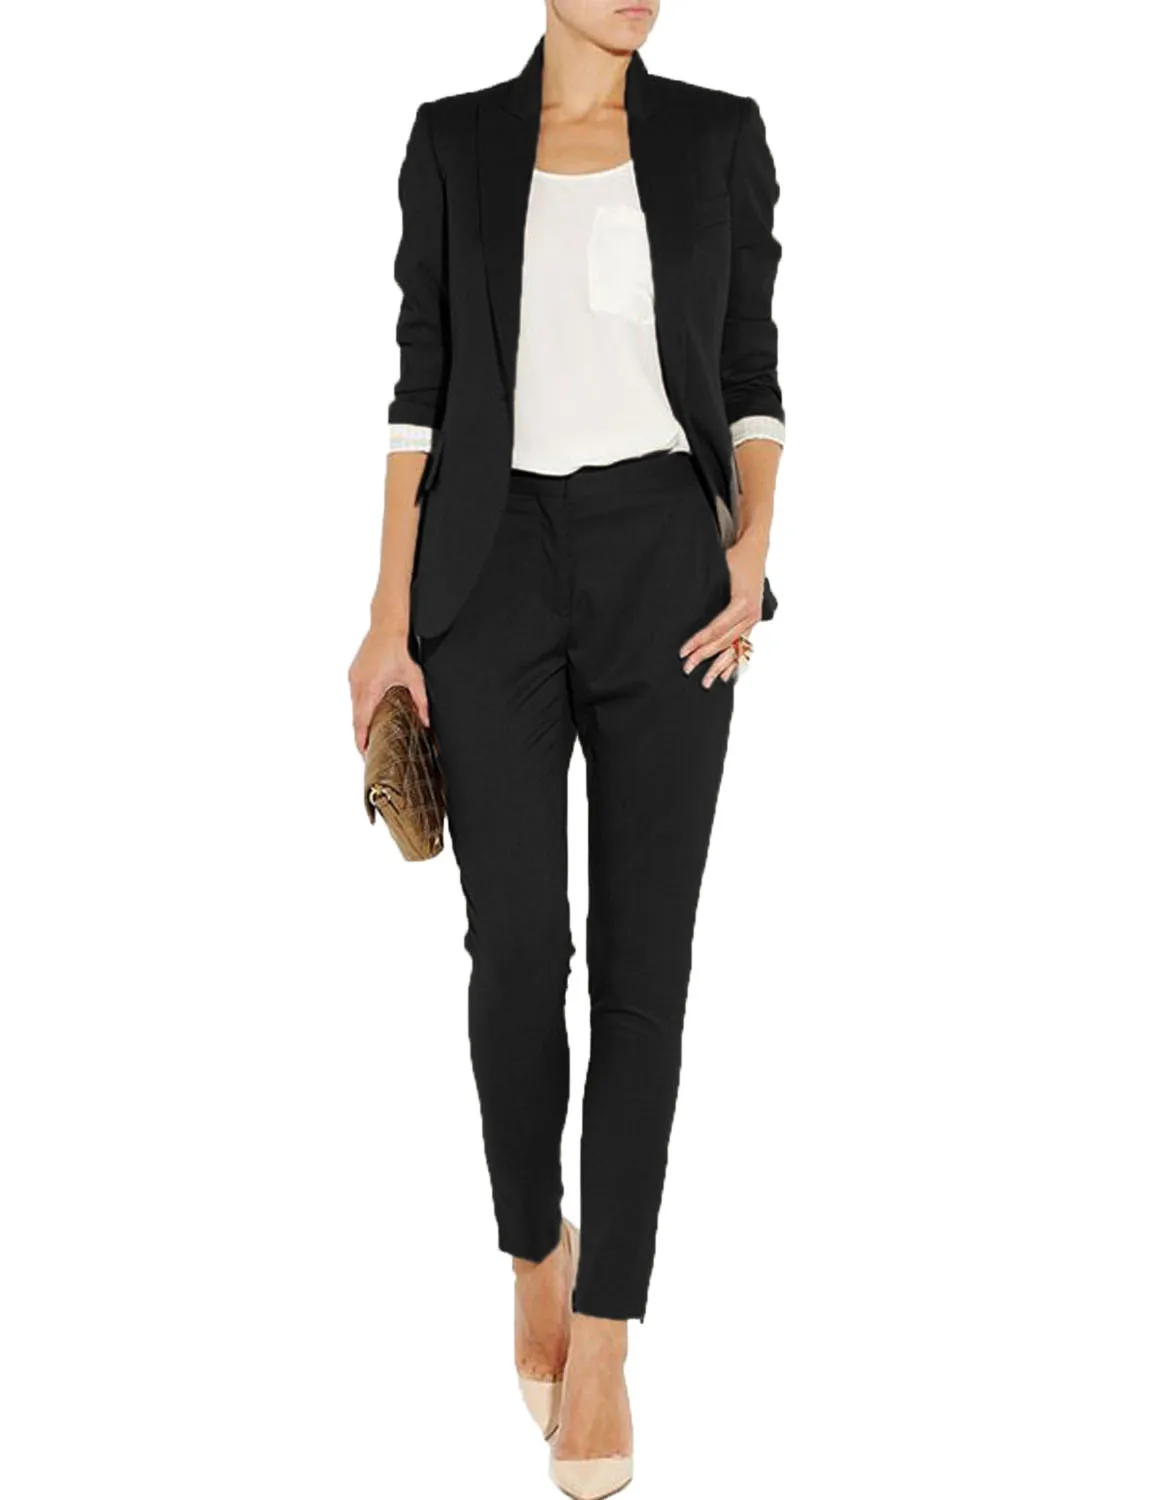 Women's Suit Slim Fit 2 Piece Suits Lady Blazer Pants & Jacket Suits Set